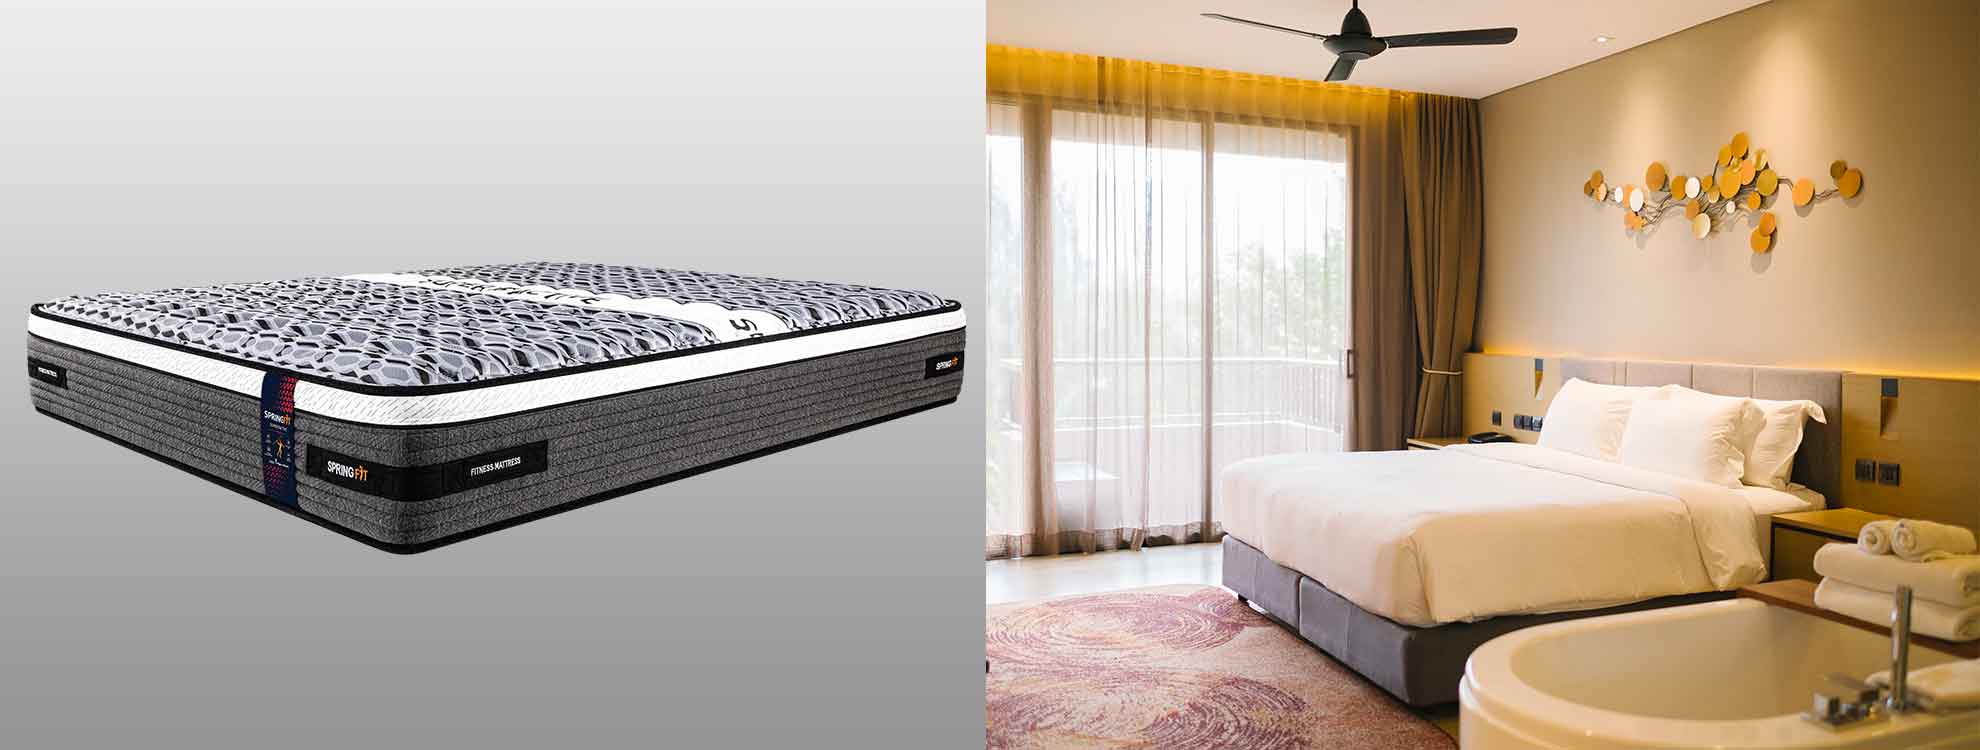 mattress for best bed frames